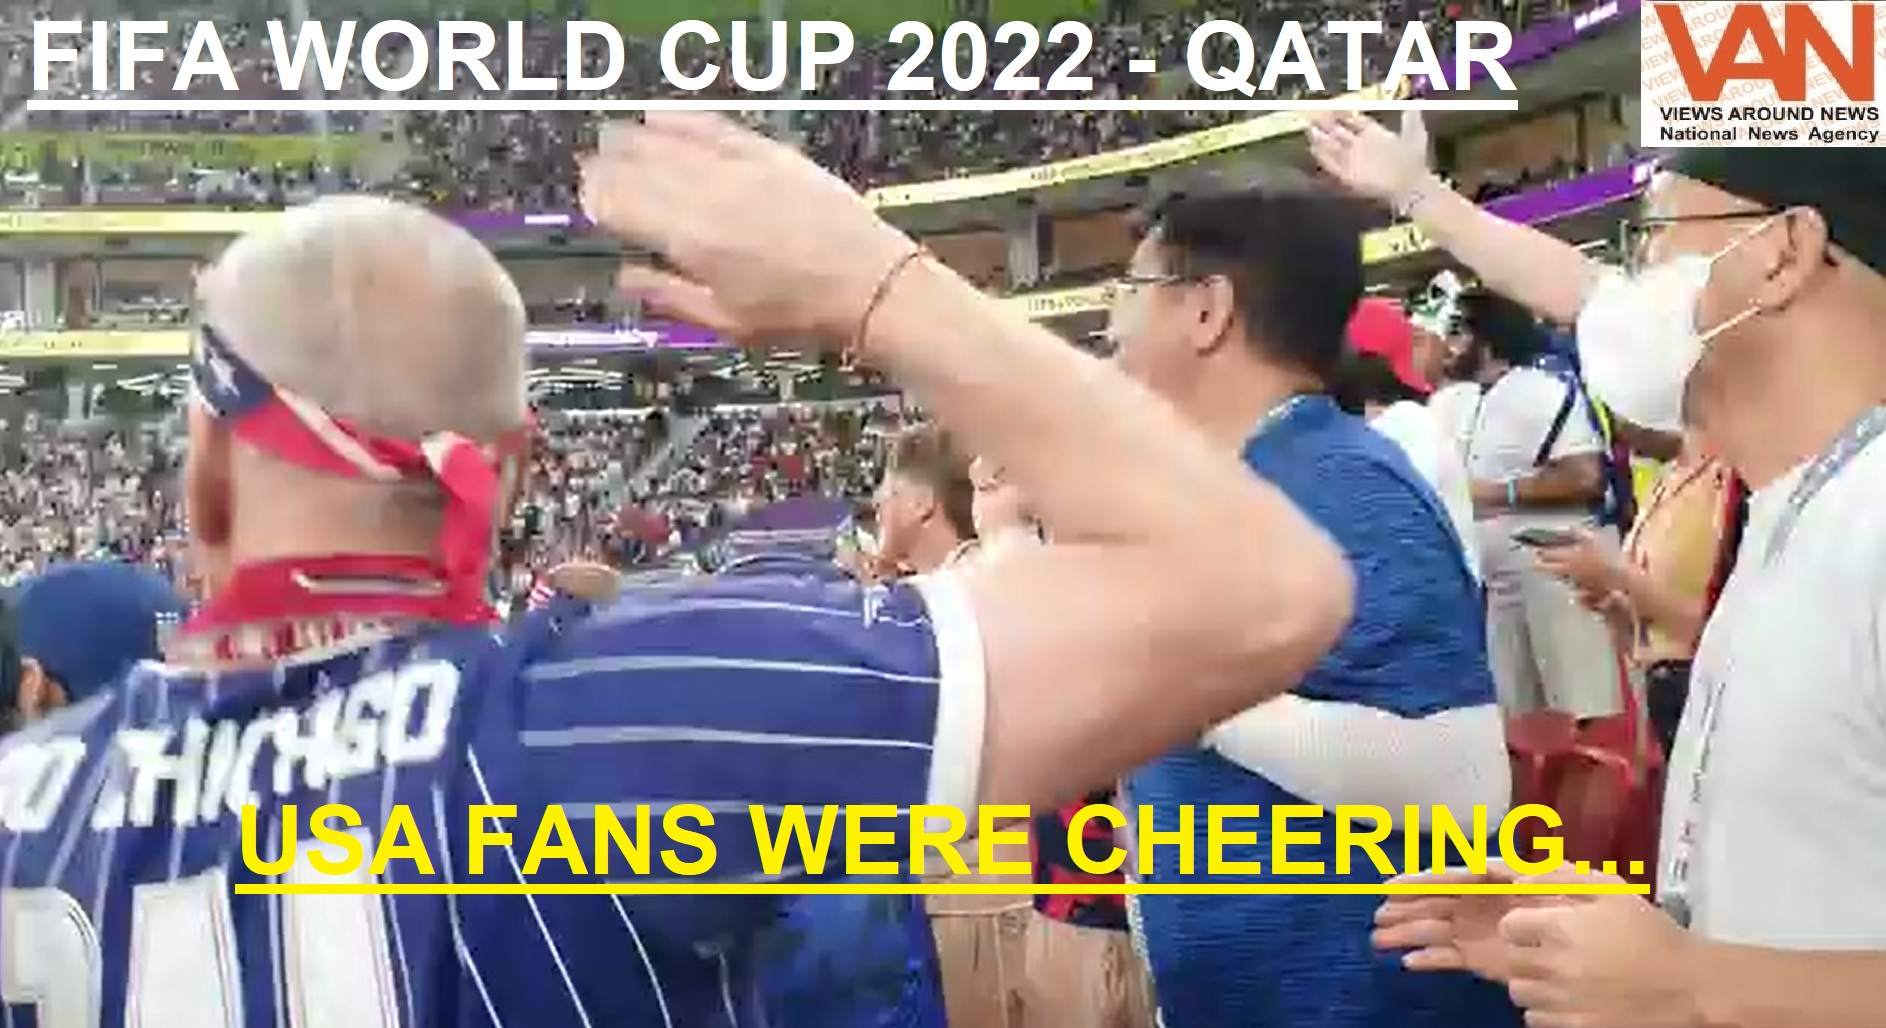 USA Fans were cheering around the stadium